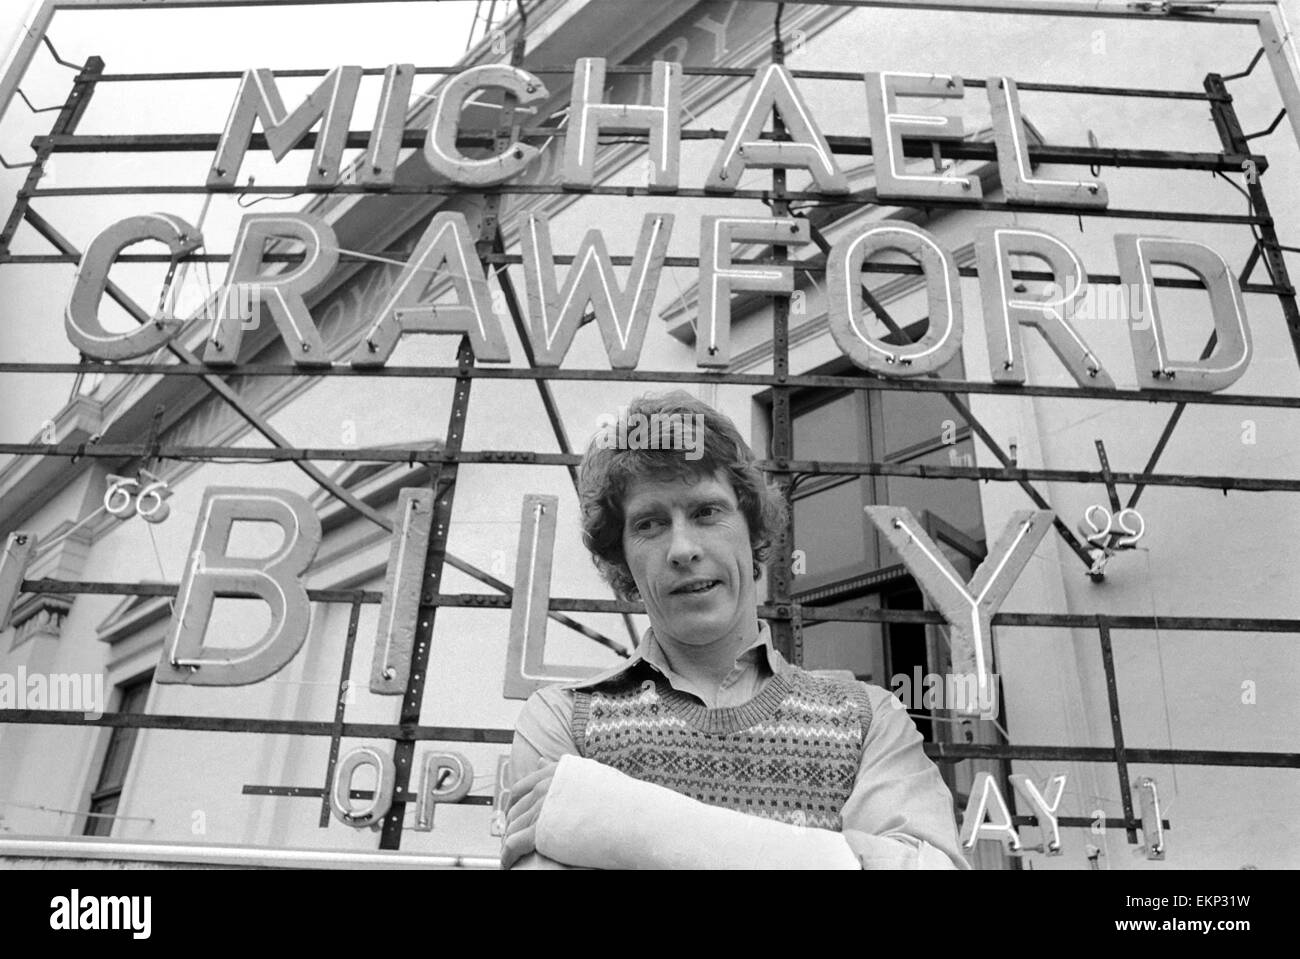 L'acteur Michael Crawford qui prend l'initiative de 'Billy' une comédie musicale basée sur les 'BILLY MENTEUR' a son nom dans les lumières à la Théâtre de Drury Lane. Dans l'intervalle, il est l'allaitement d'un bras cassé. Avril 1974 74-2470-005 Banque D'Images